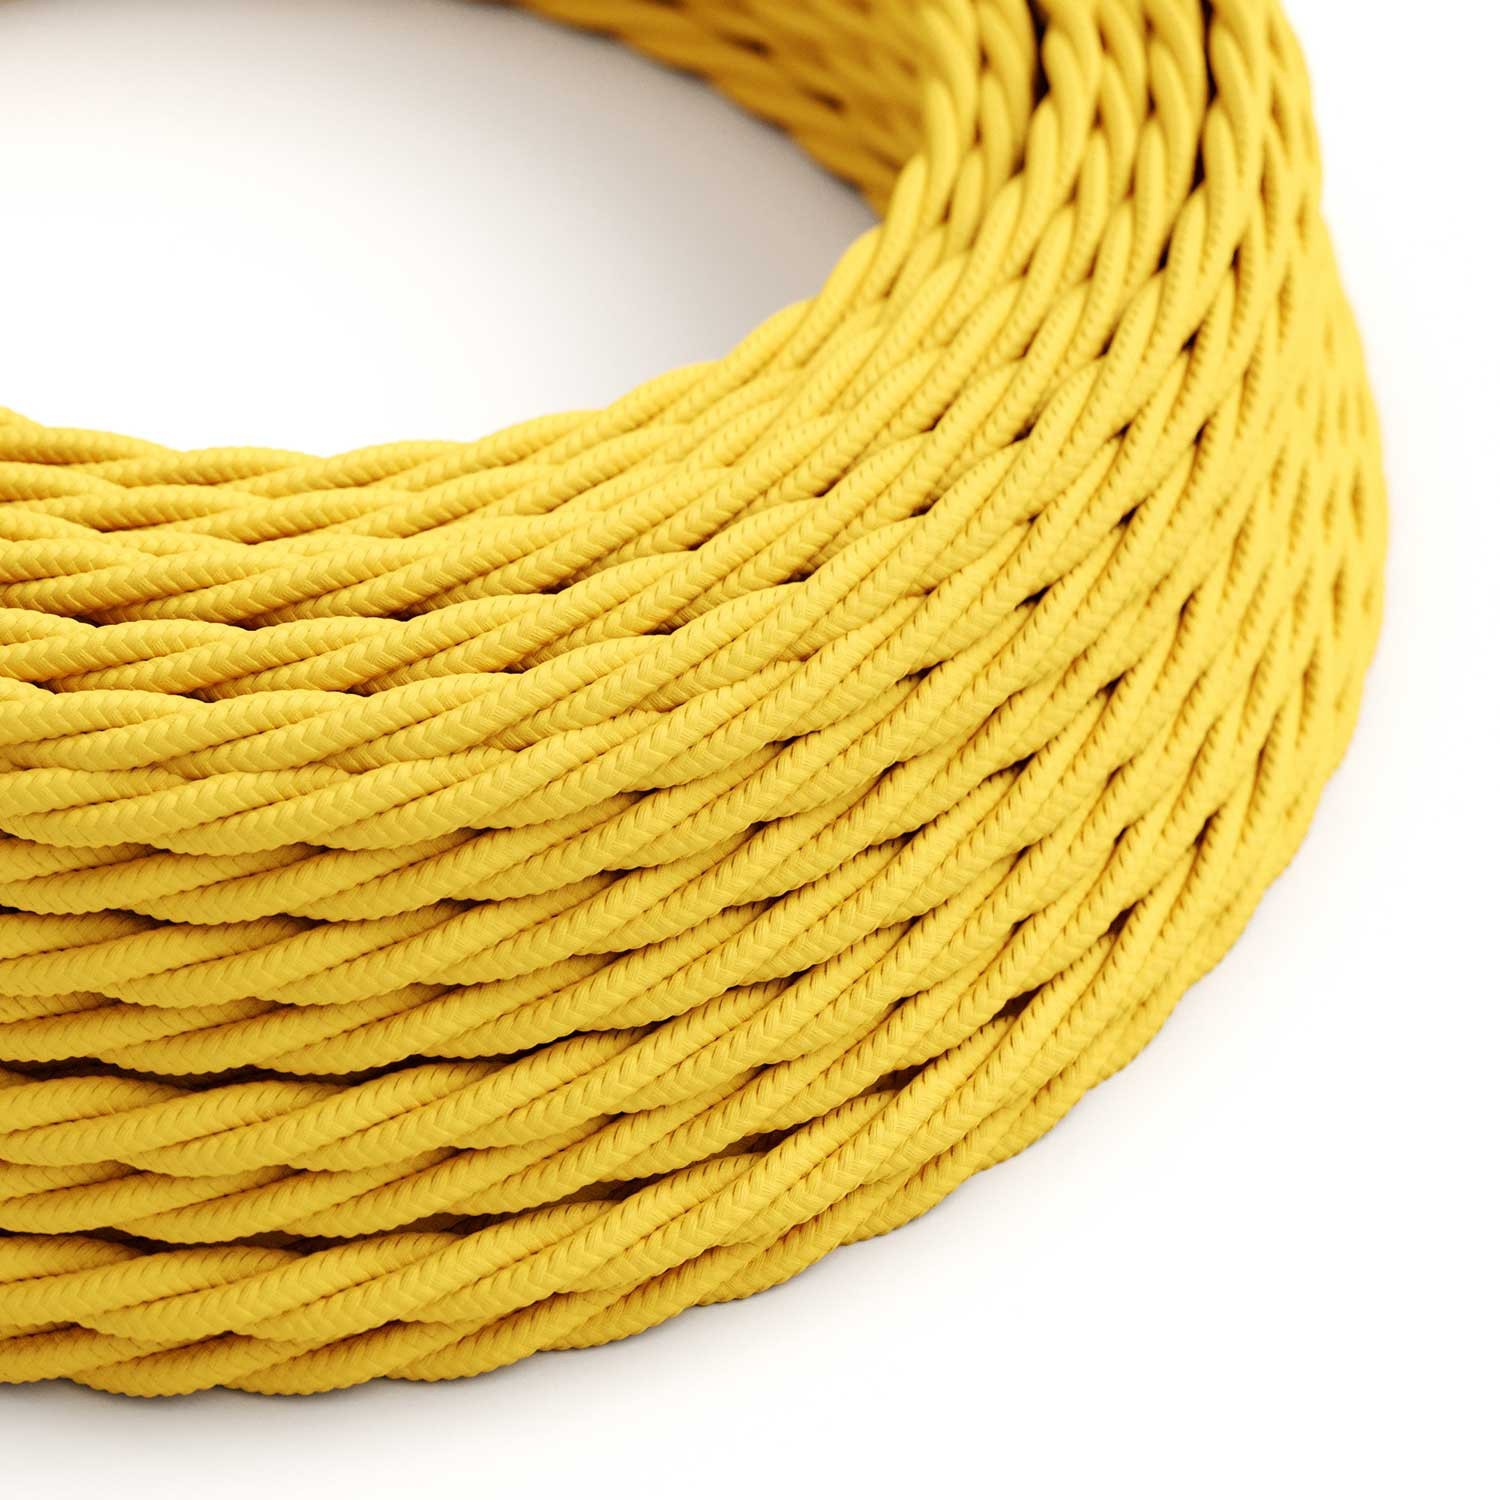 Textilkabel, maisgelb glänzend - Das Original von Creative-Cables - TM10 geflochten 2x0.75mm / 3x0.75mm